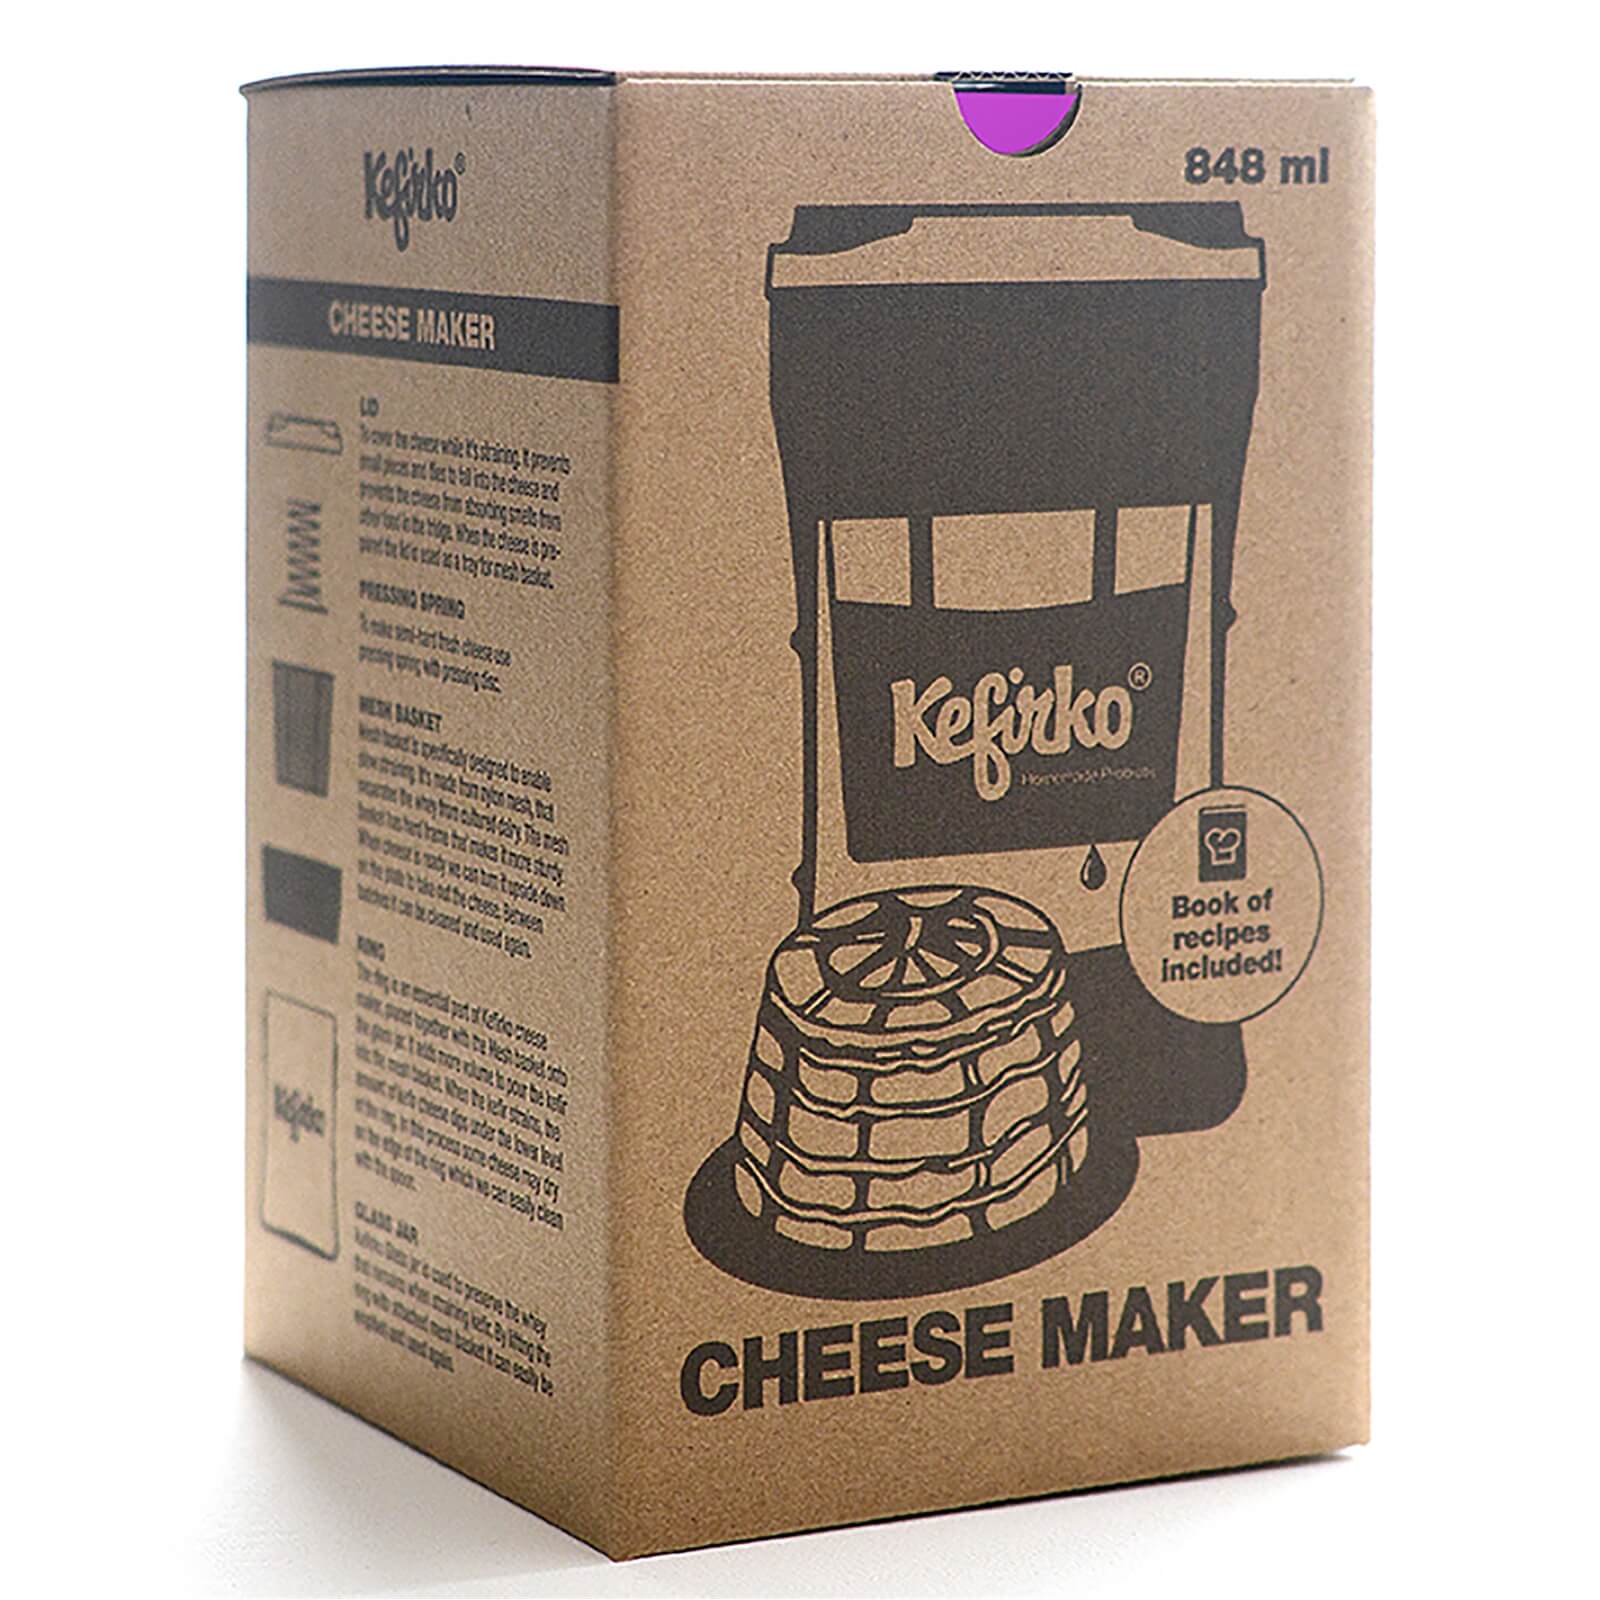 Kefirko Cheese Maker - Blissful Blue - 848ml